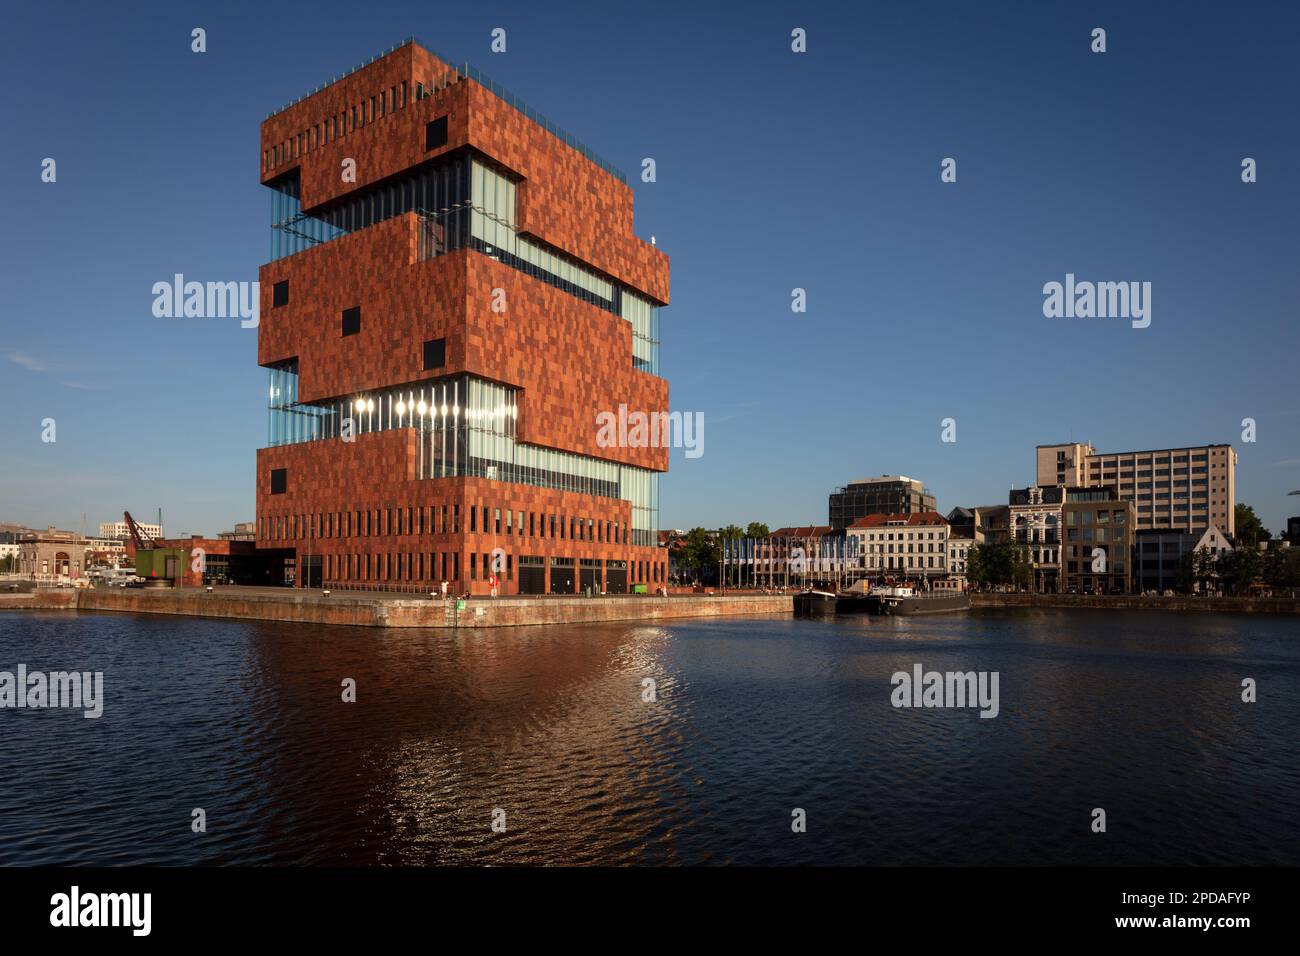 Das Museum aan de Stroom, bekannt als MAS, ist ein Museum in Antwerpen mit einer Sammlung über die maritime Geschichte und Kultur des Hafens. Belgien. Stockfoto